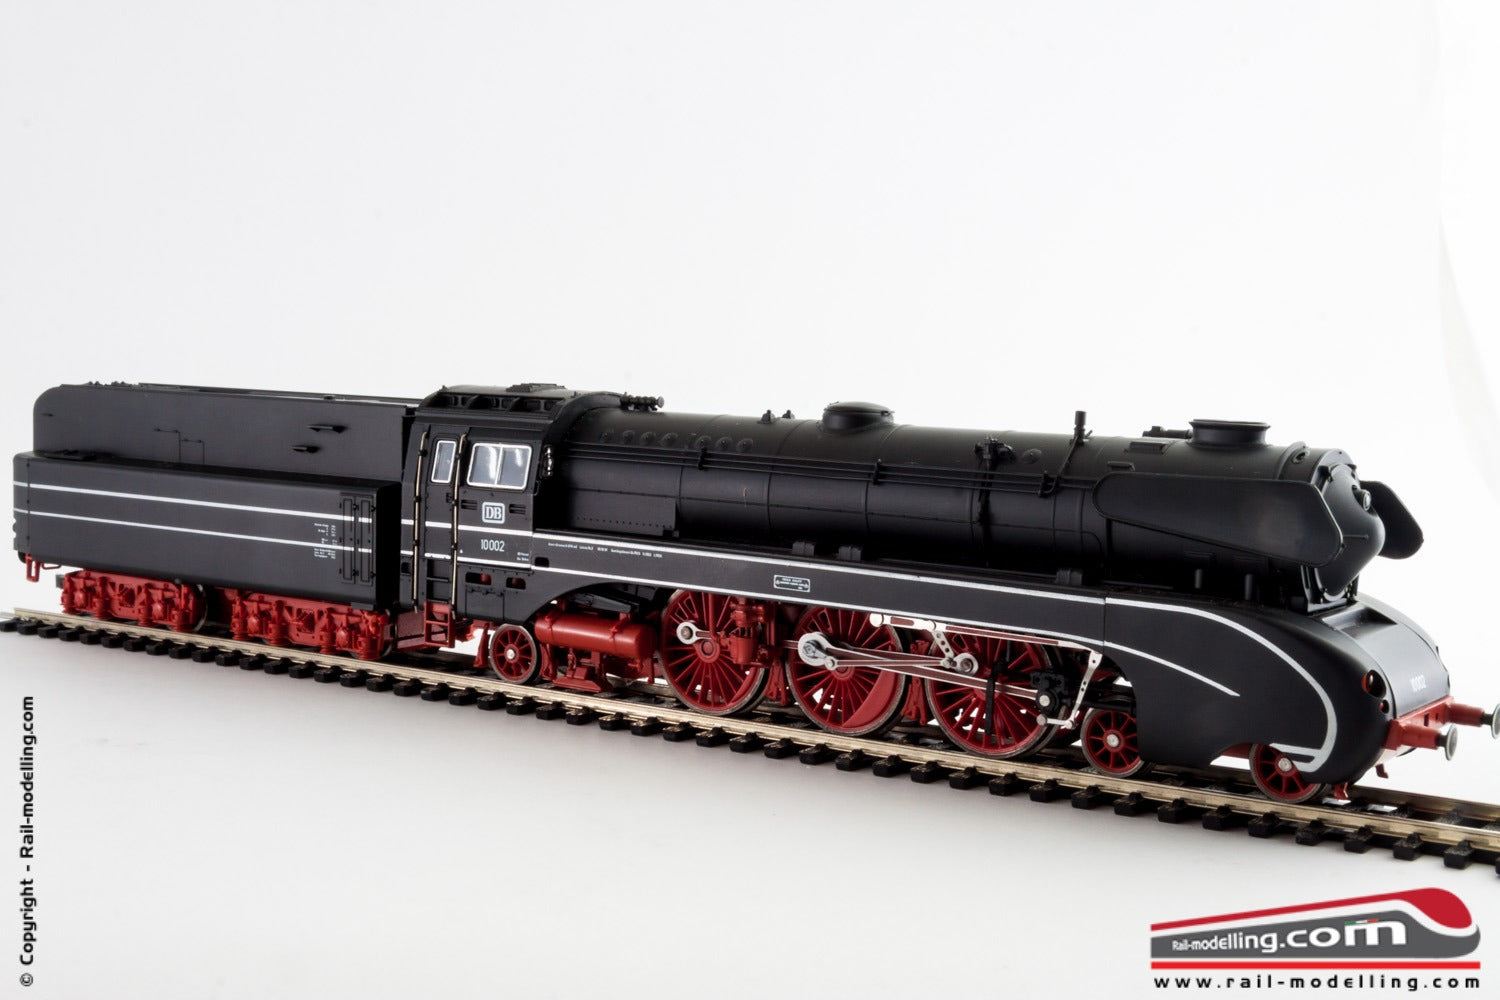 RIVAROSSI 1324 - Locomotiva a vapore carenata 2-3-1 Br 10 002 DB - DIGITALIZZATA